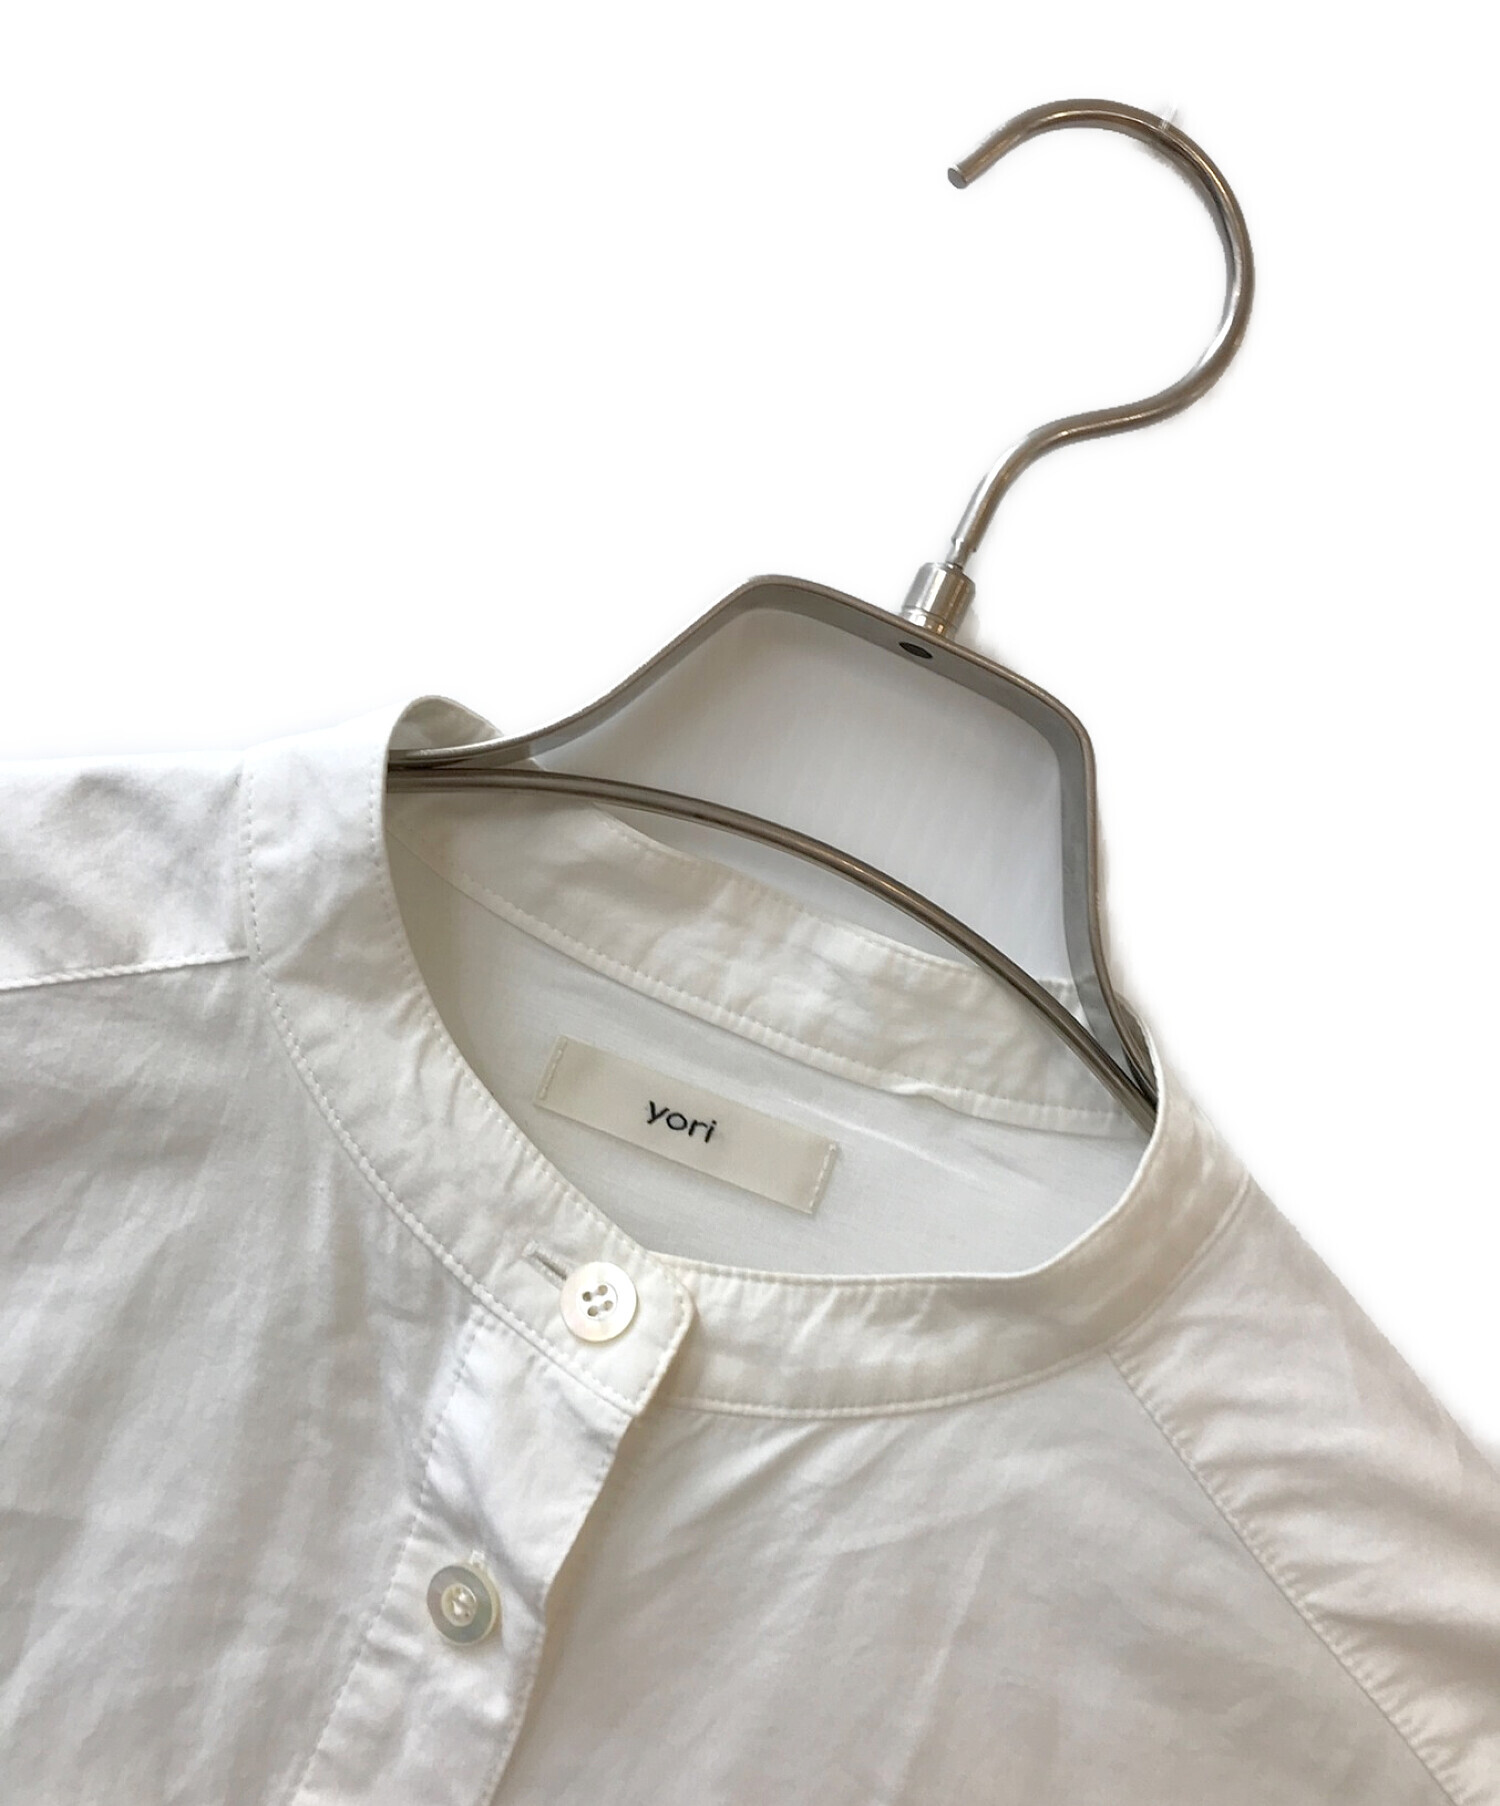 中古・古着通販】yori (ヨリ) バックギャザーシャツ ホワイト サイズ:F 